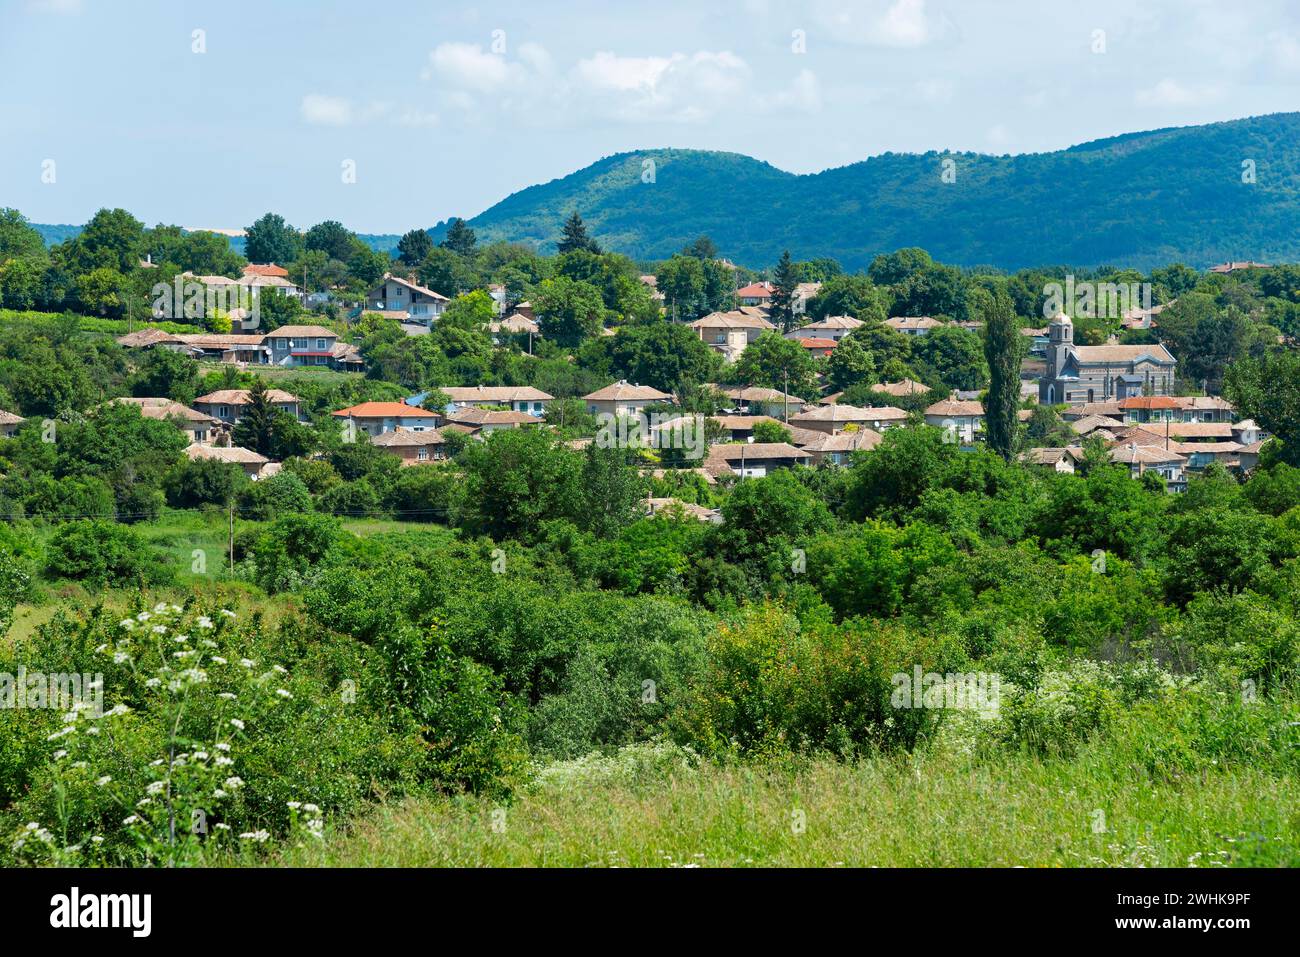 Ein ruhiges Dorf umgeben von grünen Hügeln und Bäumen unter einem teilweise bewölkten Himmel, Gagovo, Popovo, Targovishte, Bulgarien Stockfoto